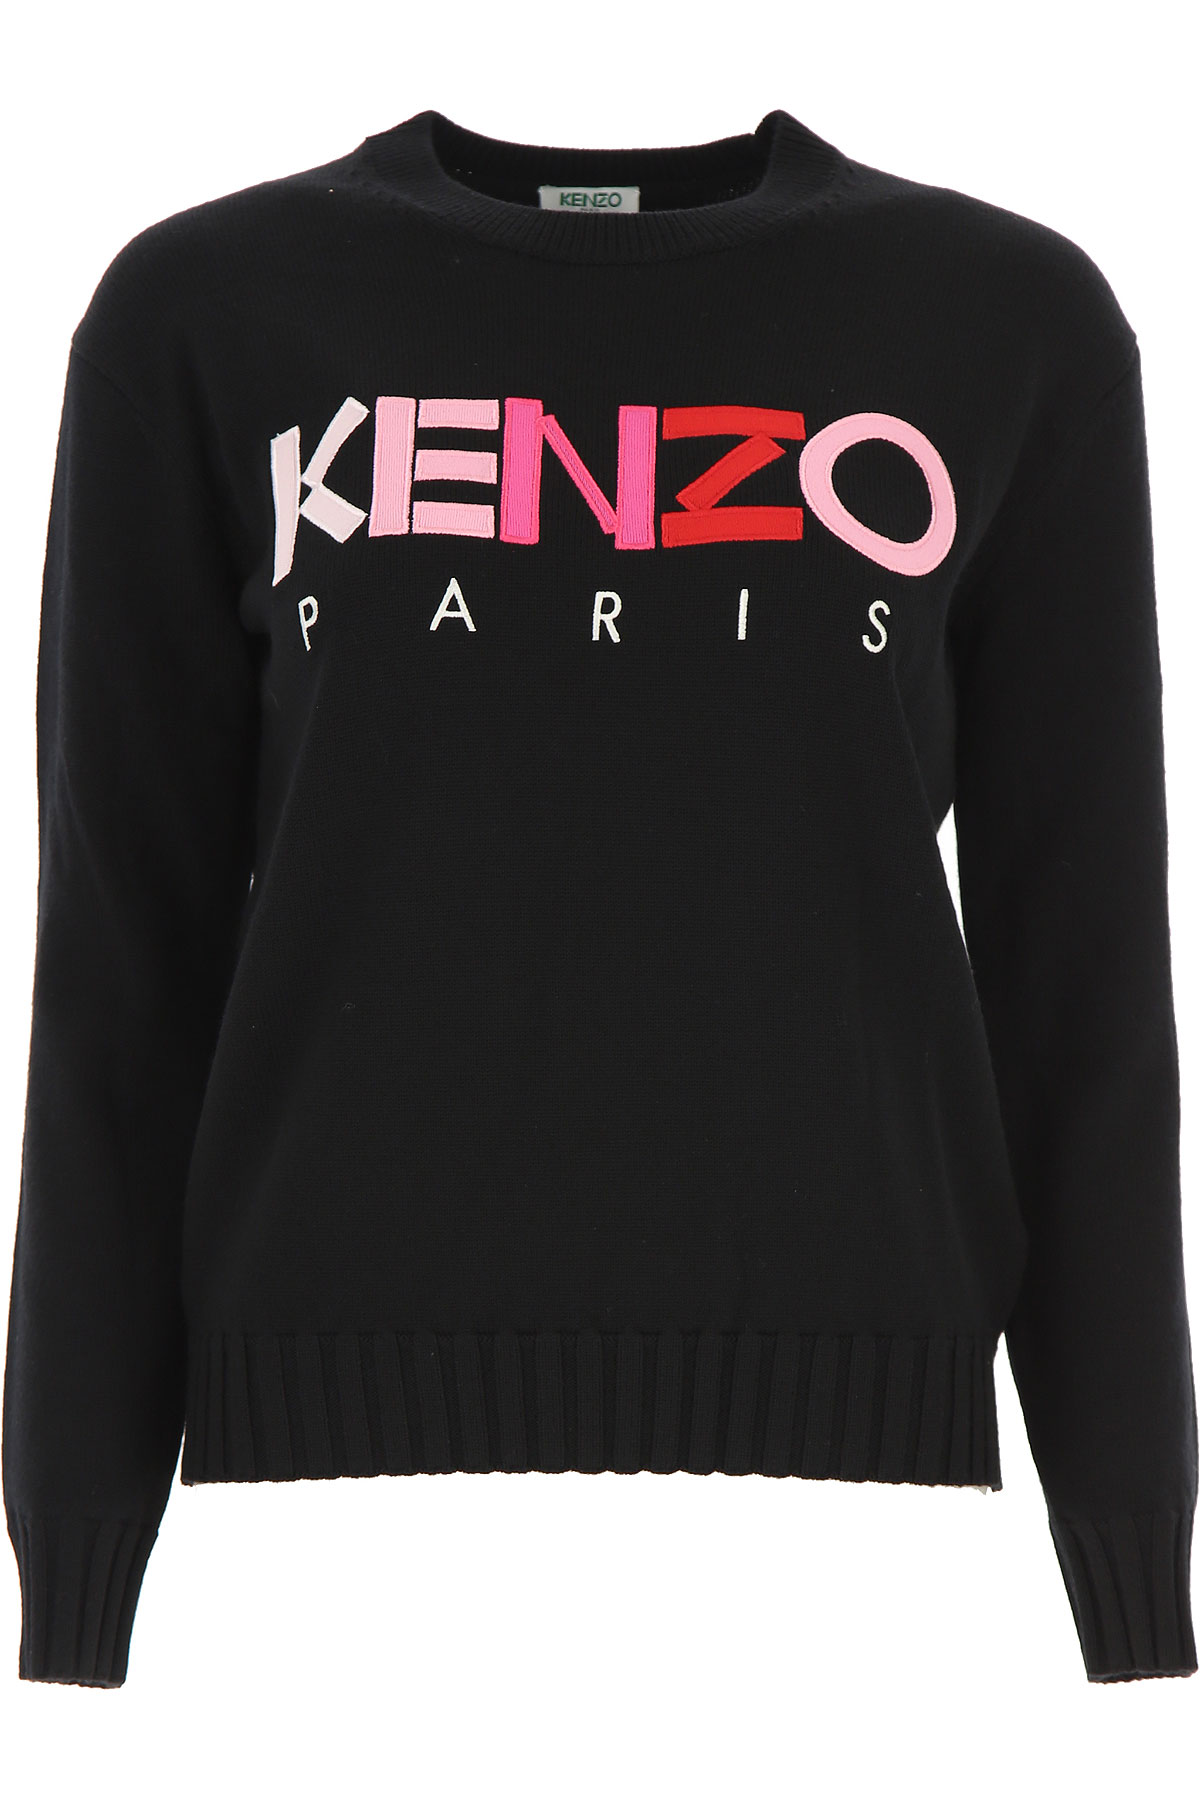 Shop Kenzo | UK